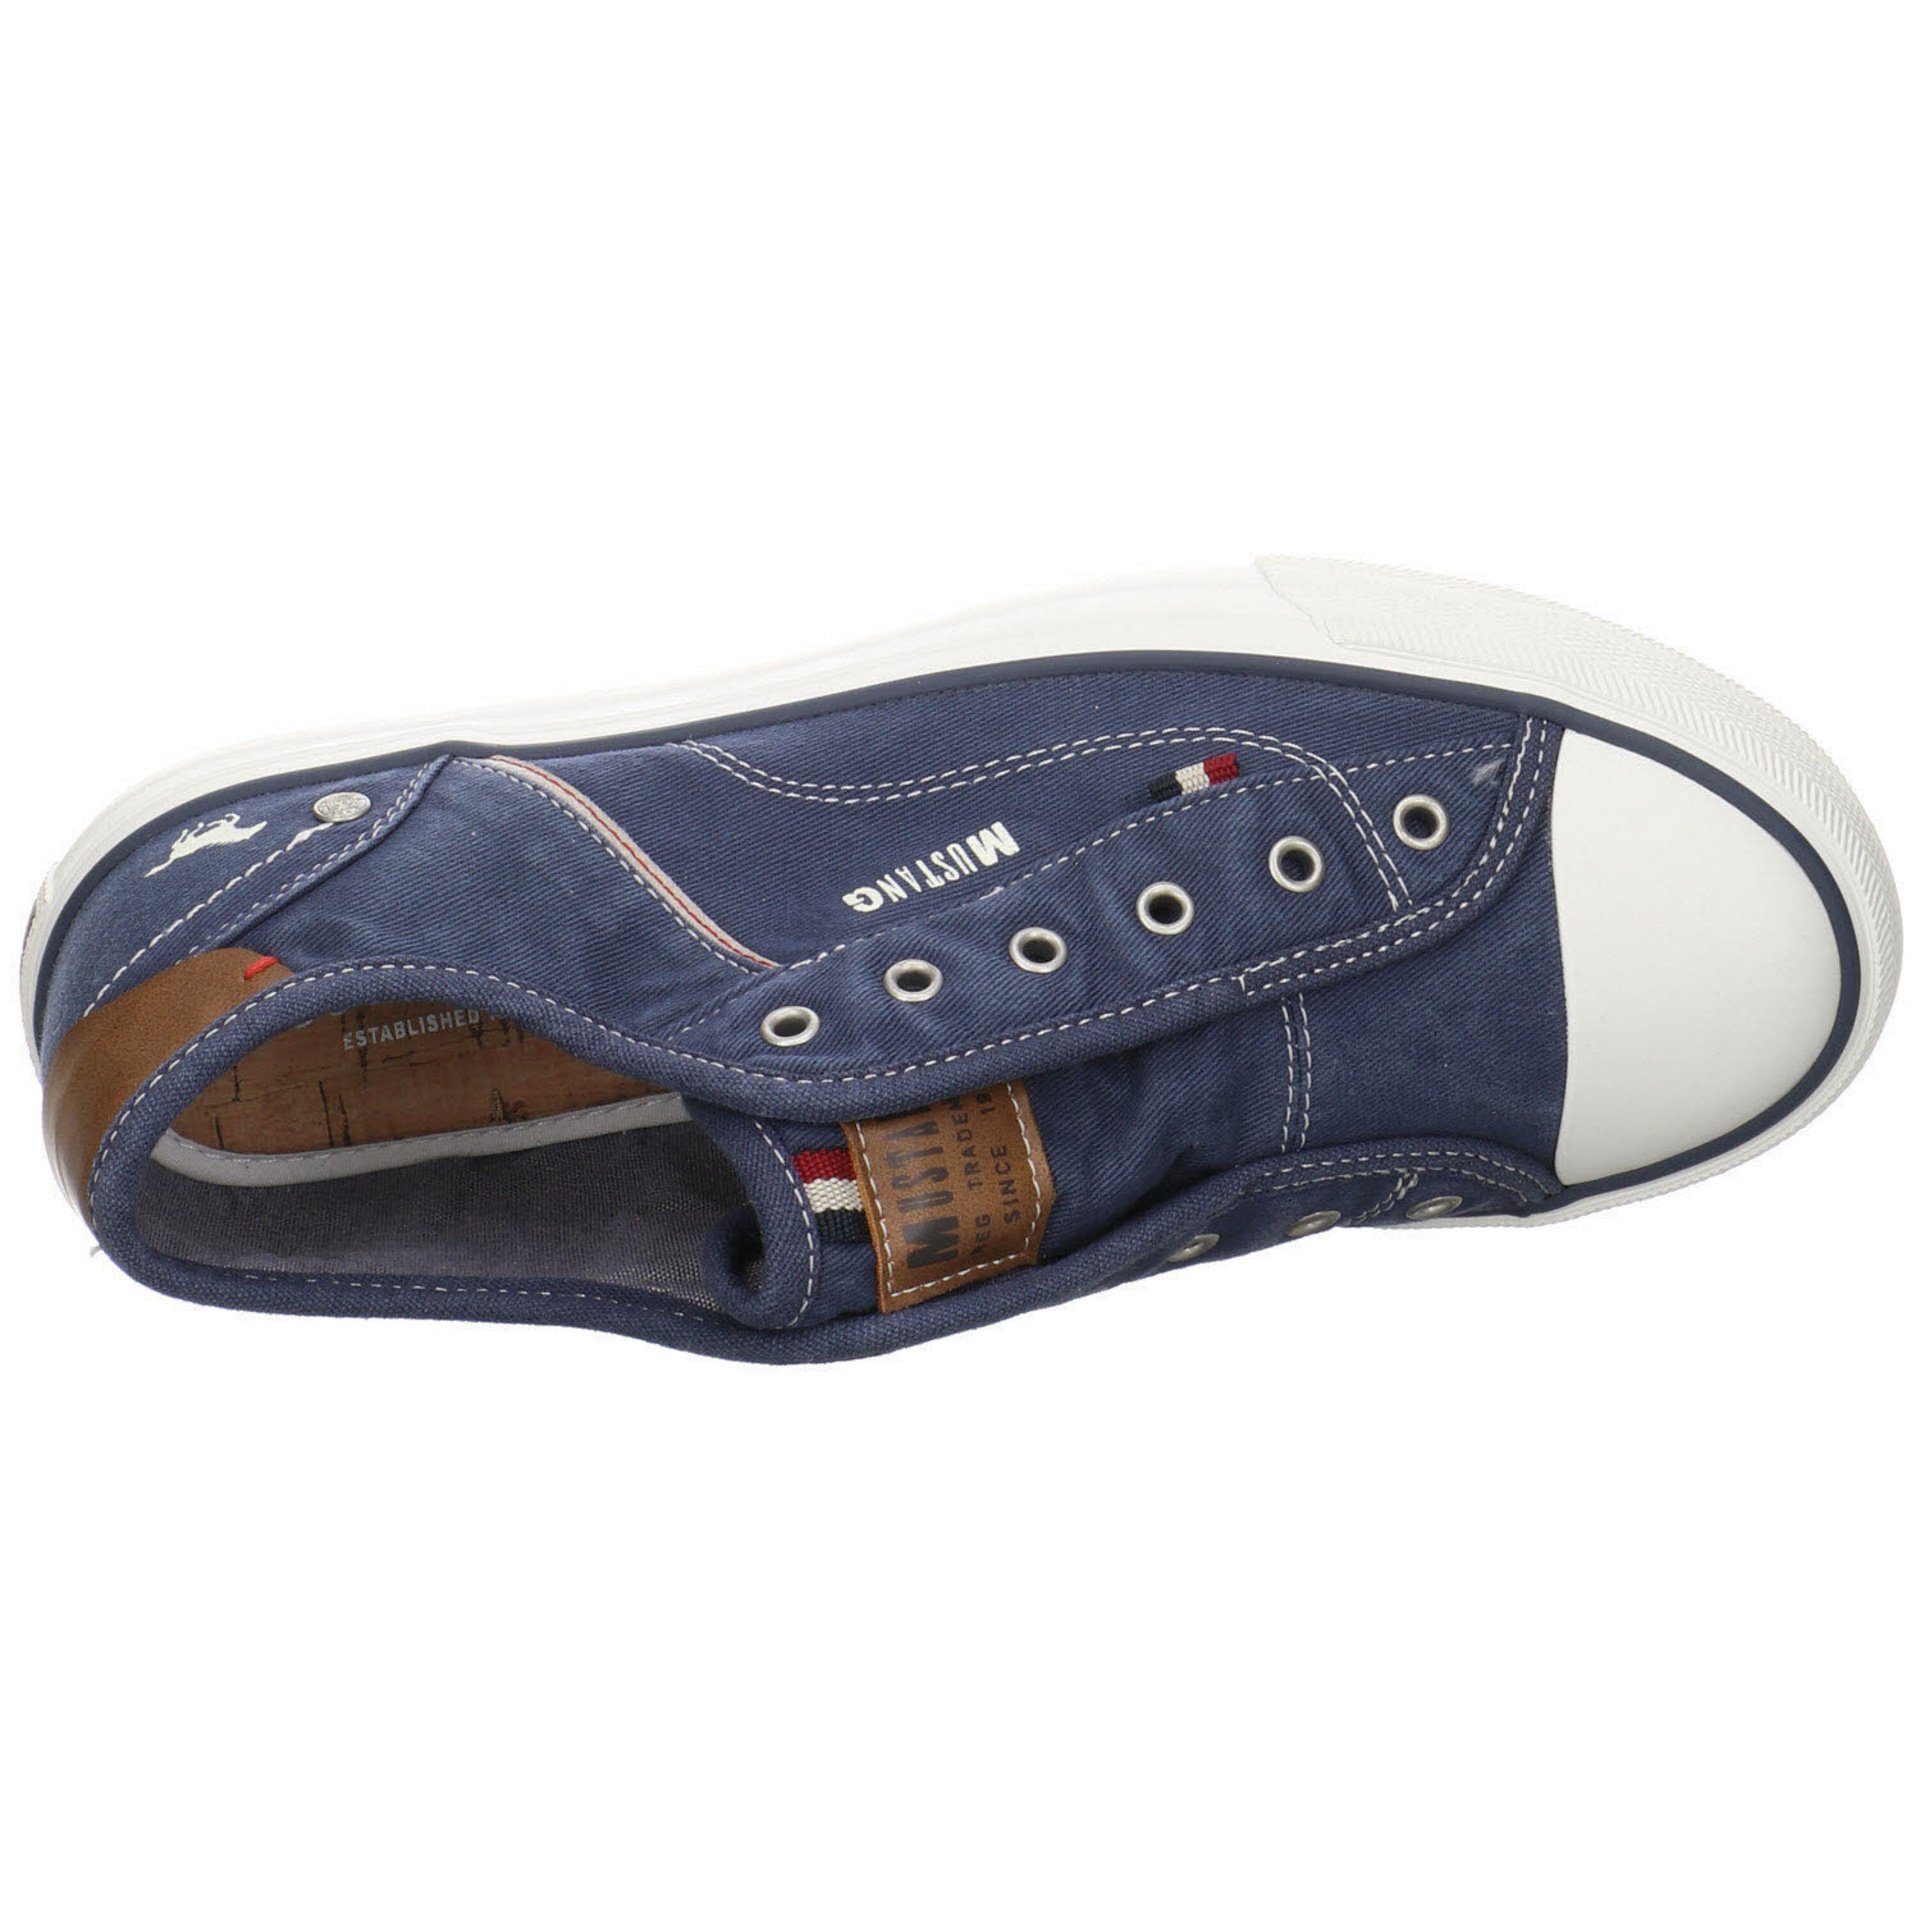 Sneaker Shoes Damen Slipper Textil Schuhe Slip-On Slipper Mustang dunkelblau